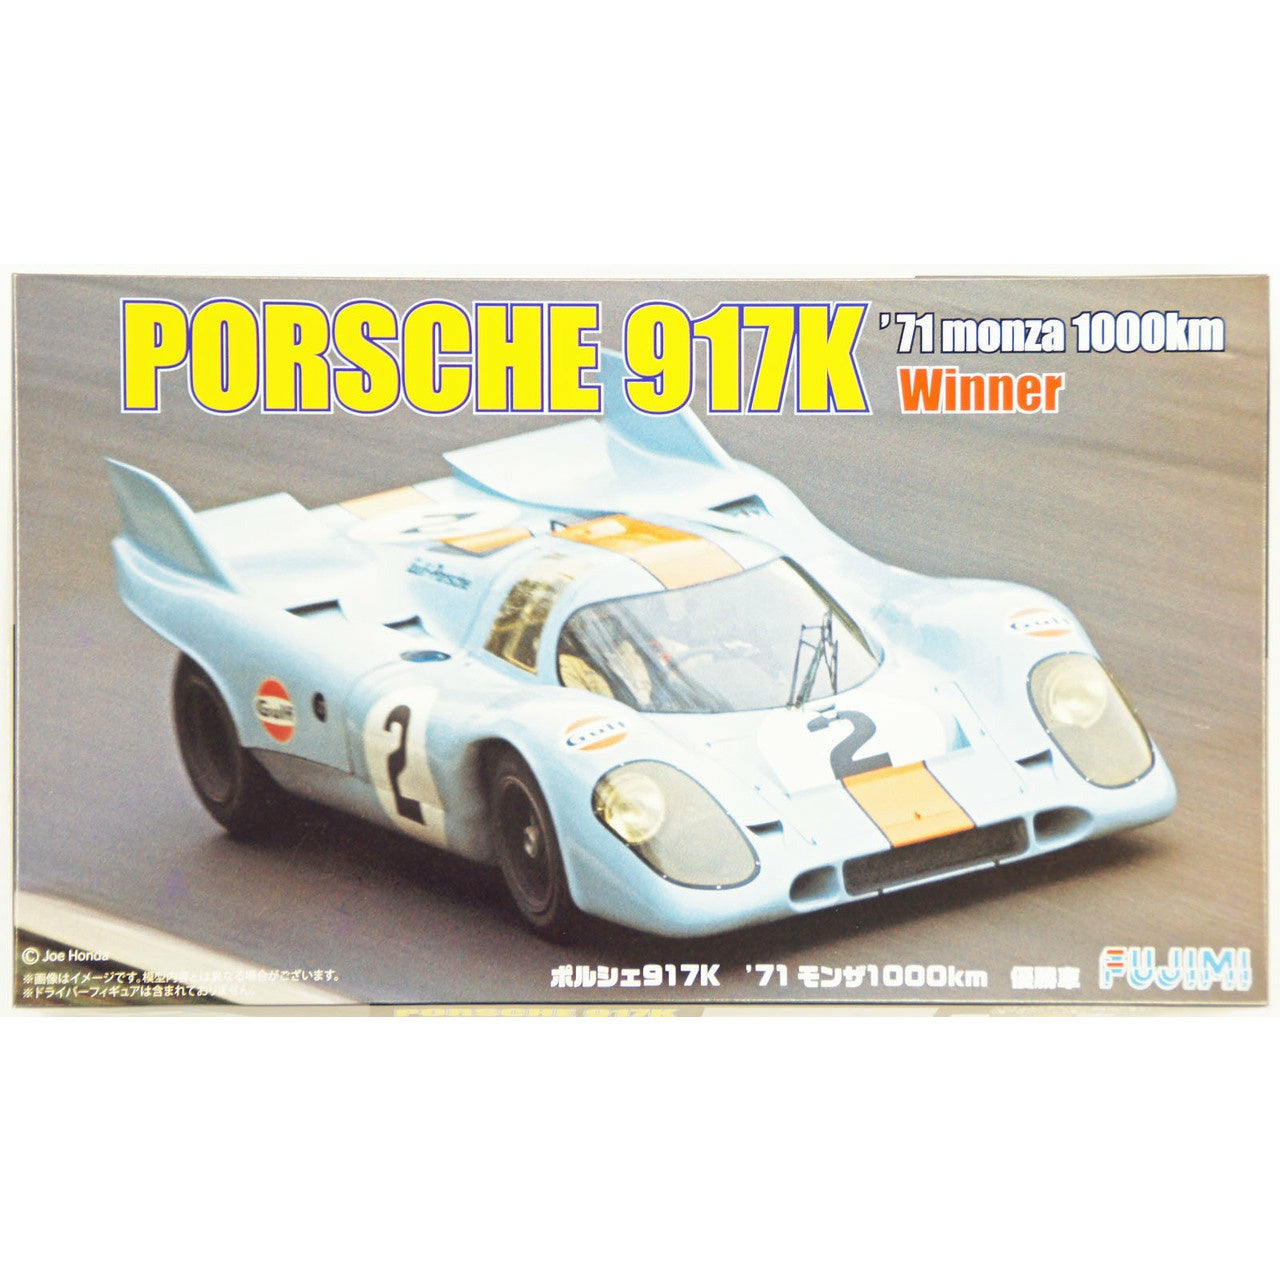 Porsche 917K '71 Monza 1000km Winner 1/24 #126166 by Fujimi